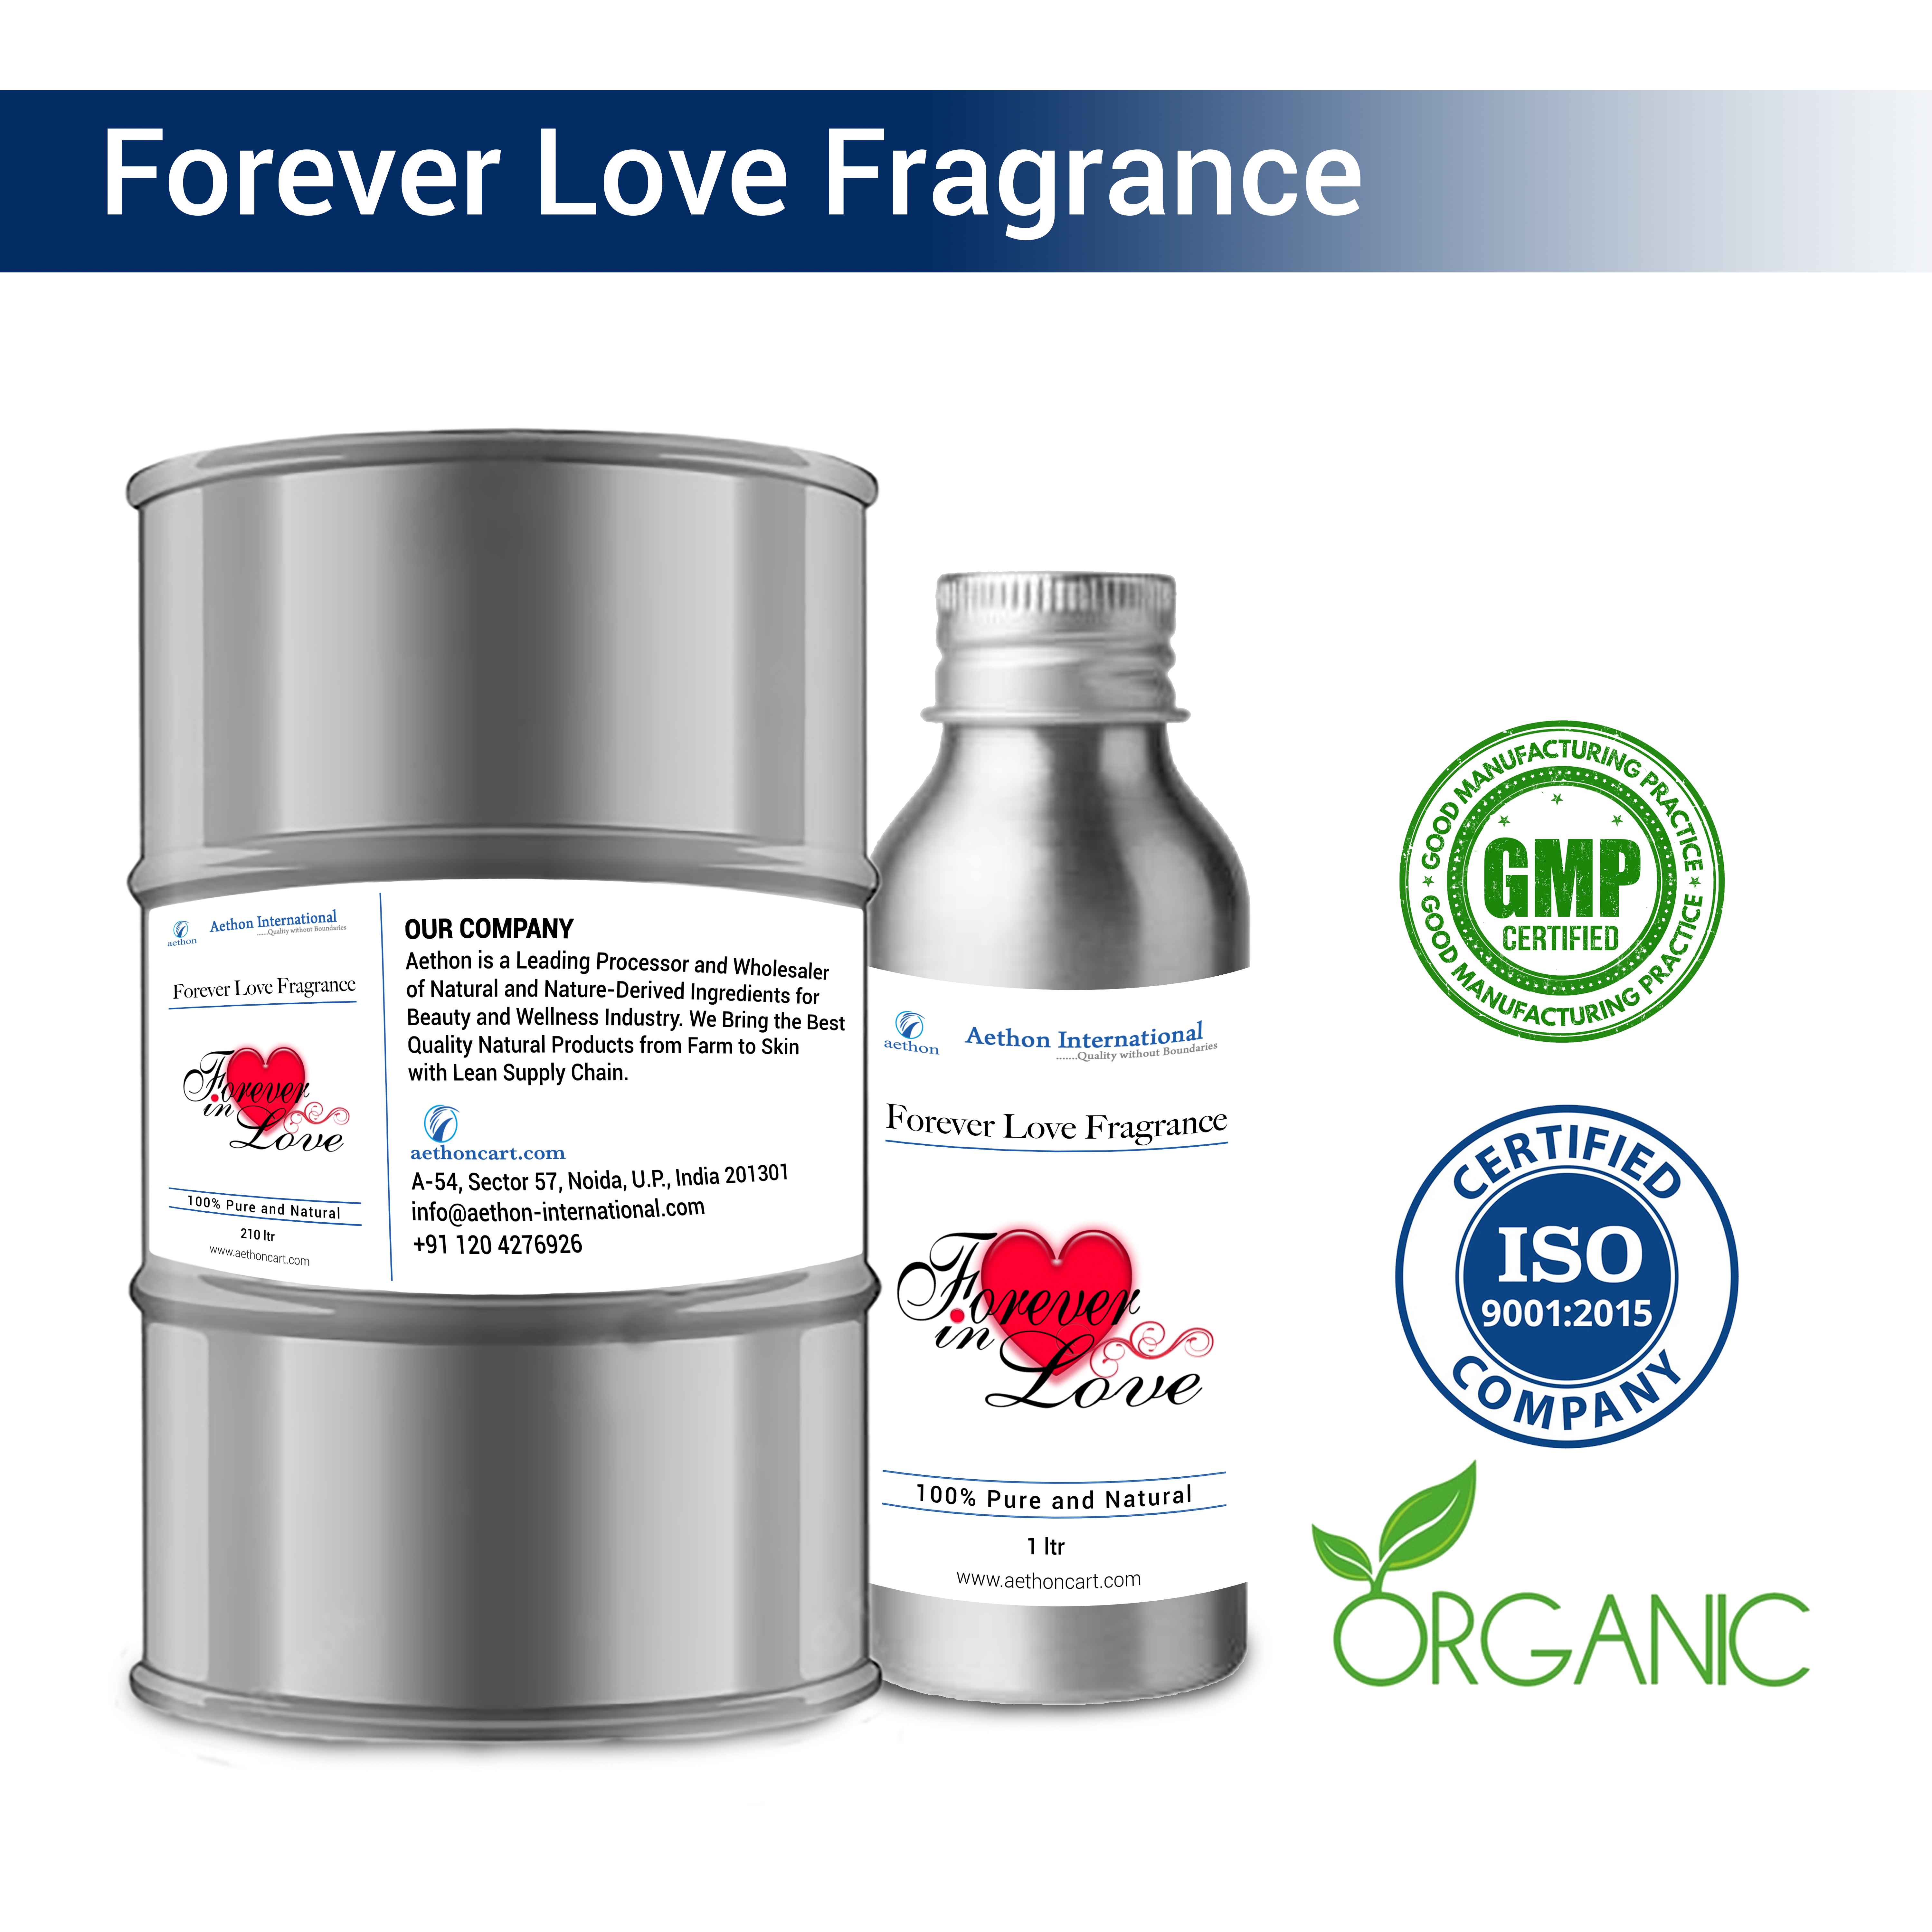 Forever Love Fragrance